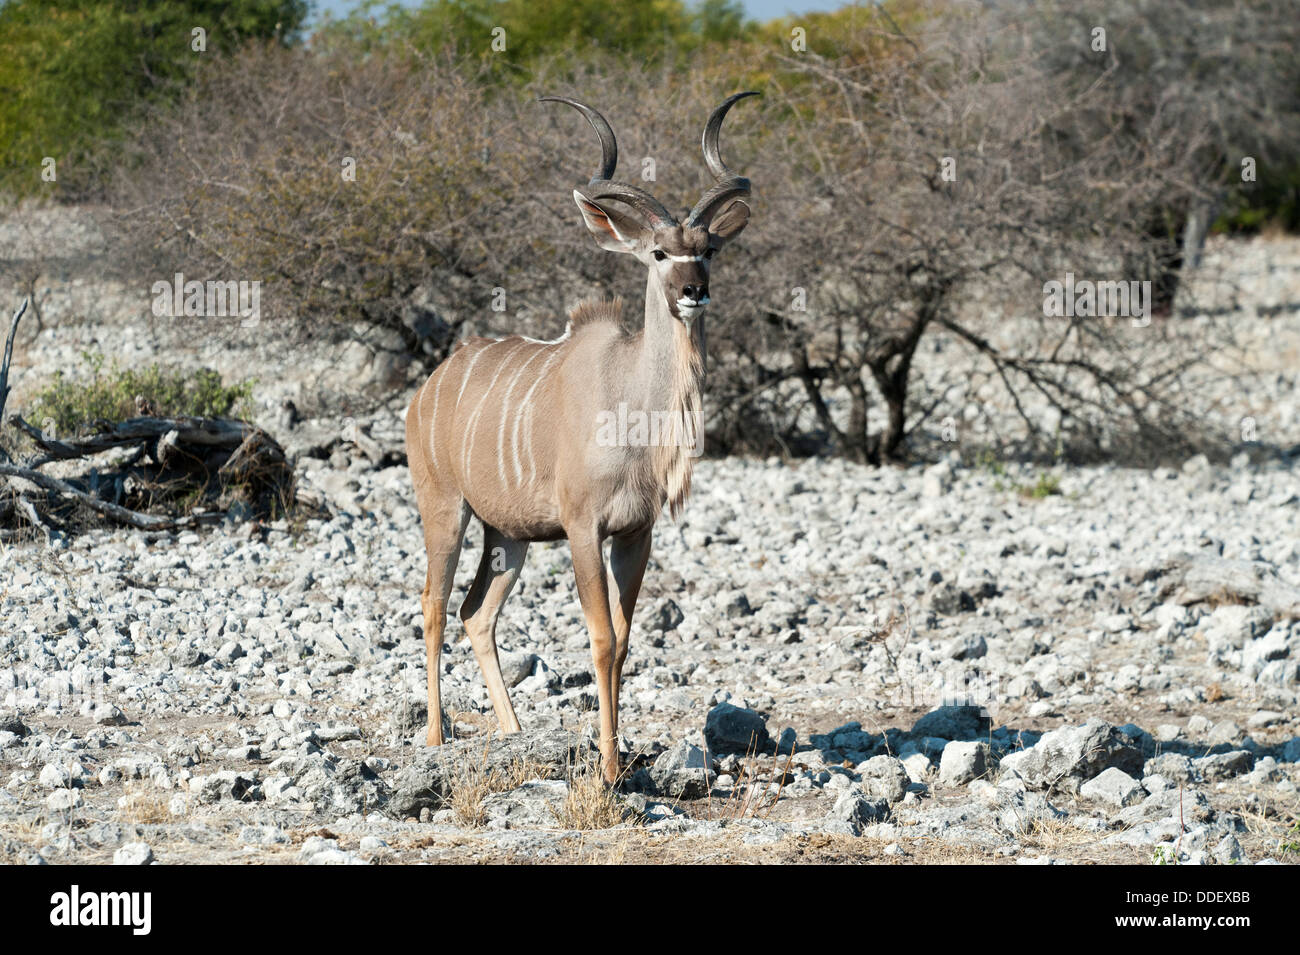 Greater Kudu (Tragelaphus strepsiceros) male, standing on rocky ground, Etosha Nationalpark, Namibia Stock Photo